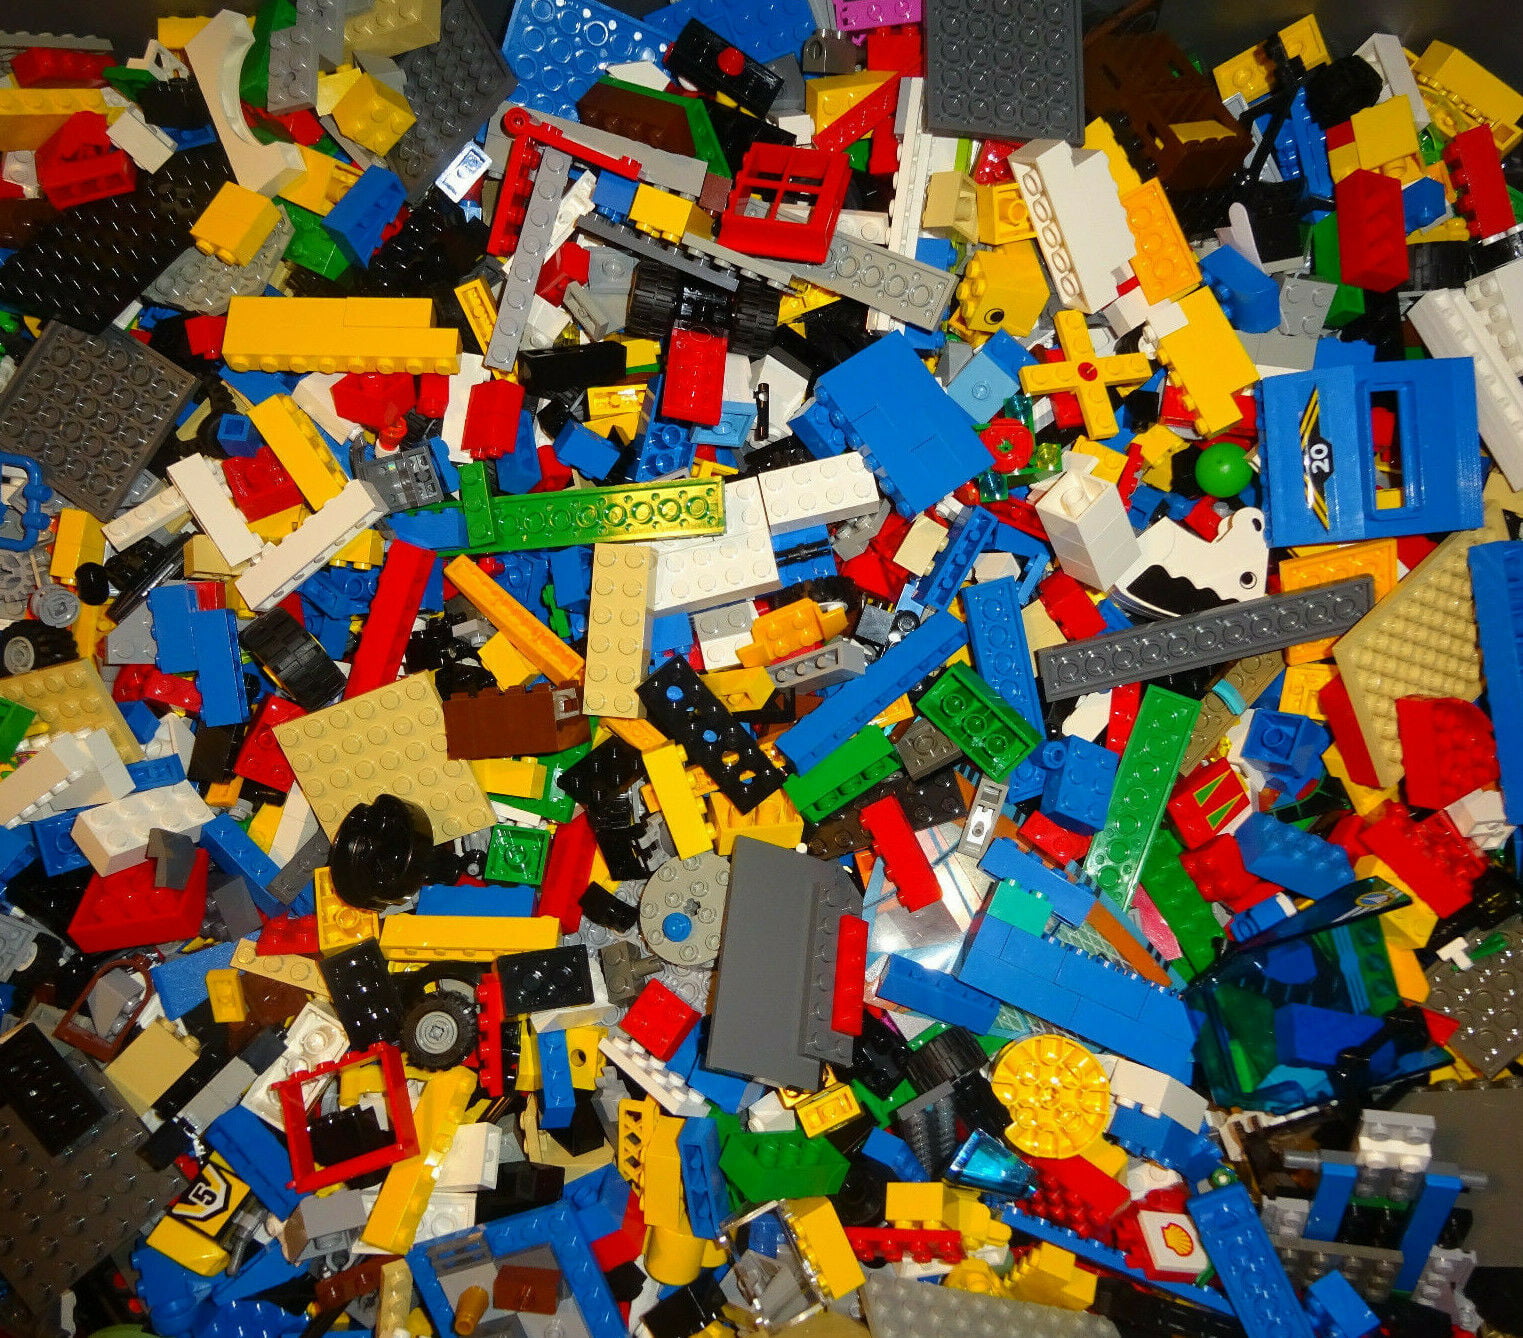 ☀️50 X LEGO 2x4 BRICKS MIX LEGOS ALL COLORS HUGE BULK LOT PARTS PIECES @ RANDOM 